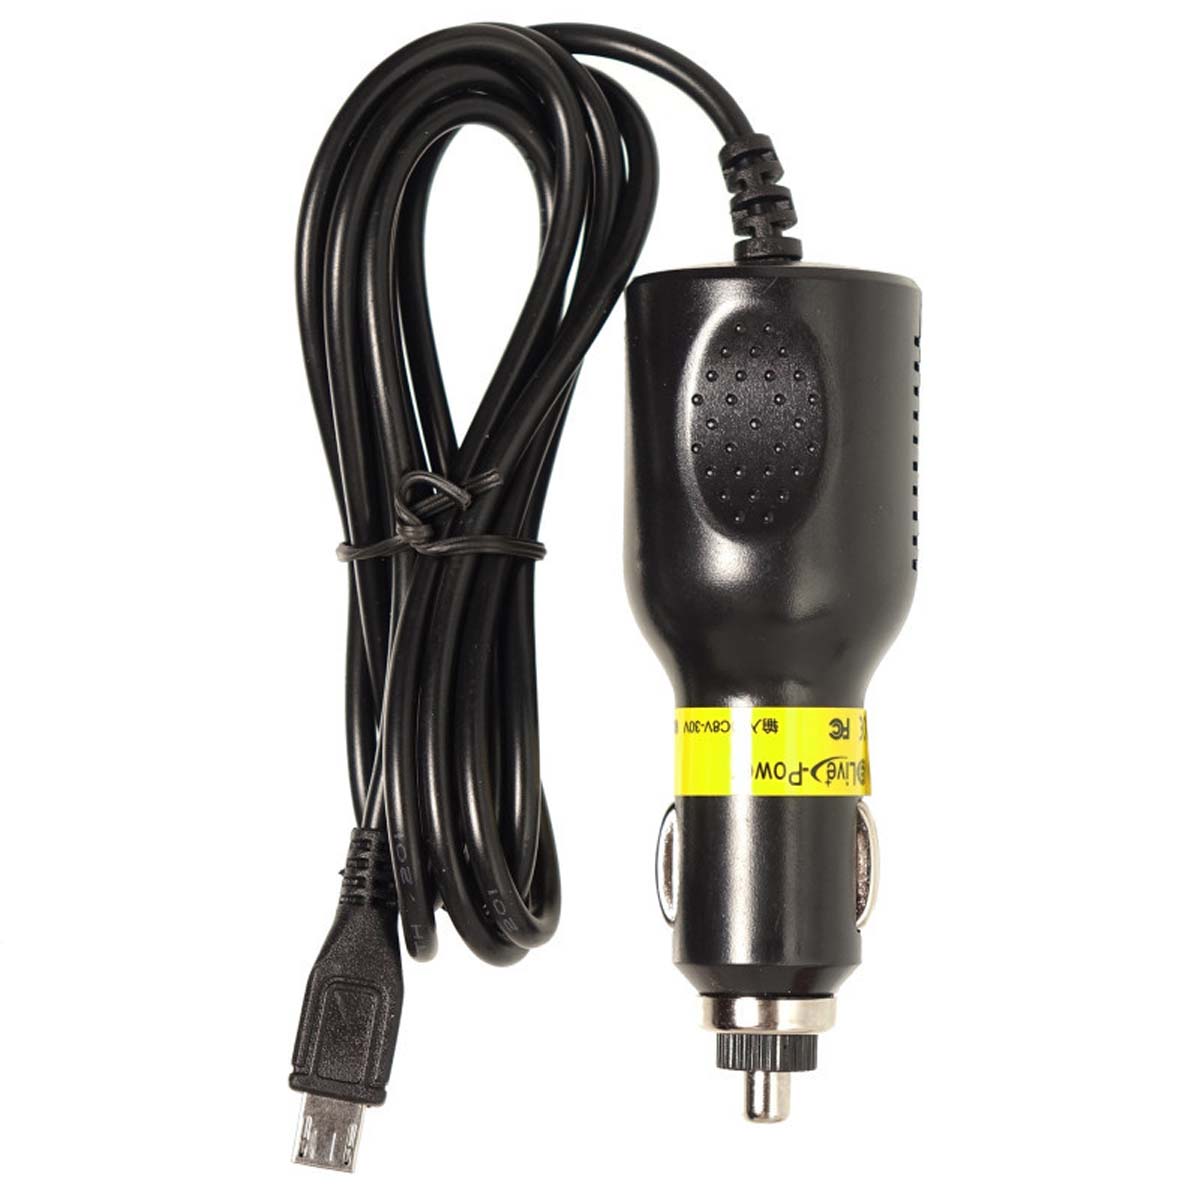 АЗУ (Автомобильное зарядное устройство) LP4 с кабелем Micro USB, 2А, длина 3.5 метра, цвет черный